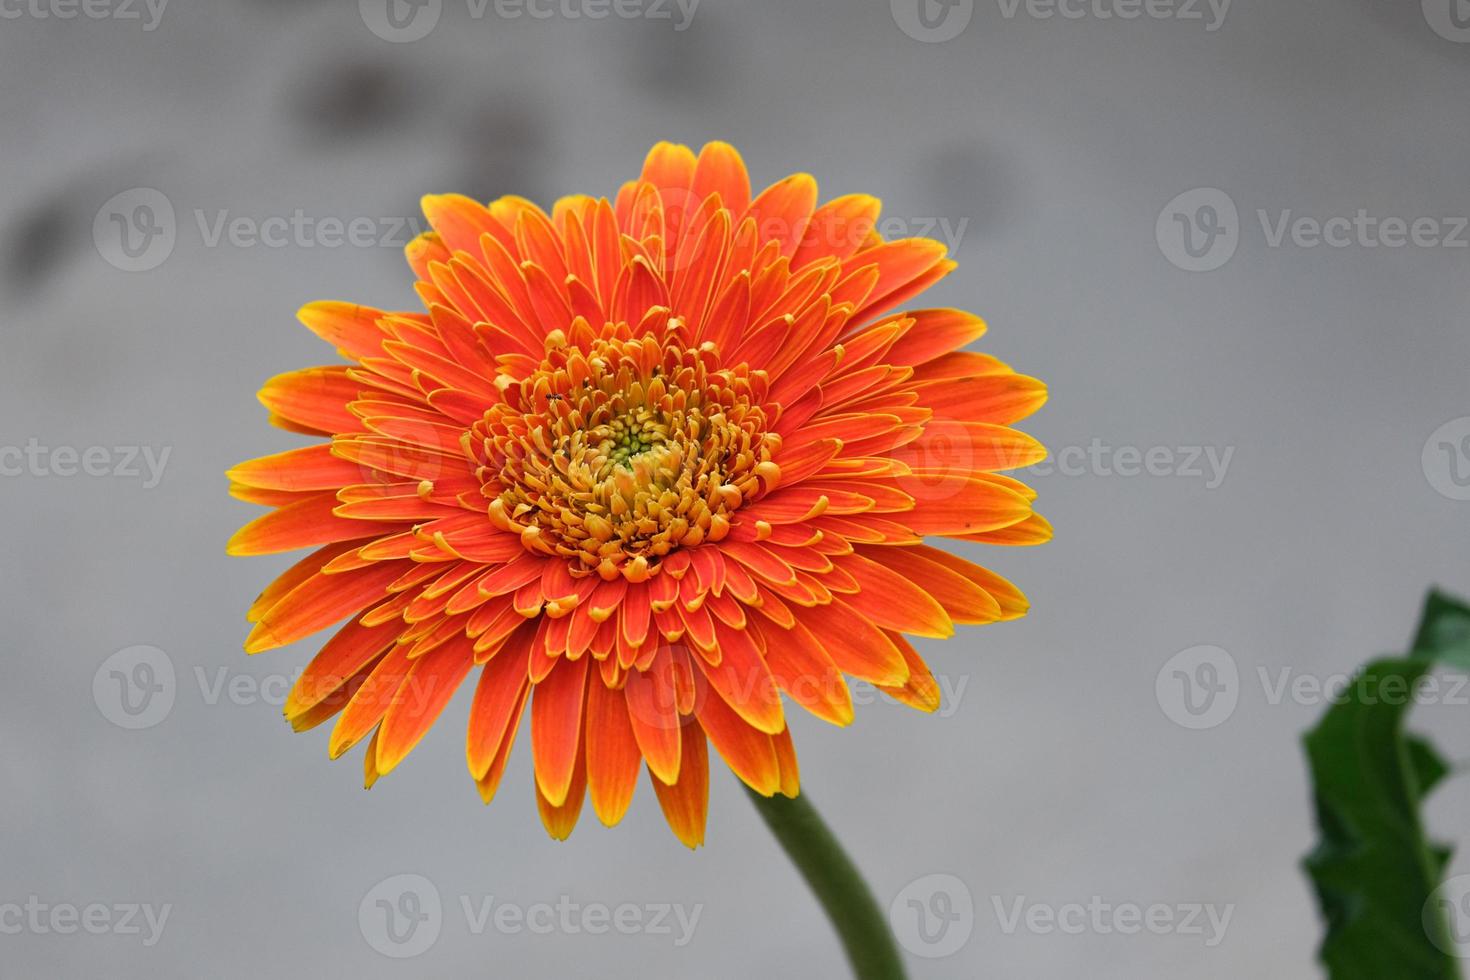 hermosa flor de gerbera naranja y amarilla fresca que florece en el jardín botánico de múltiples pétalos foto